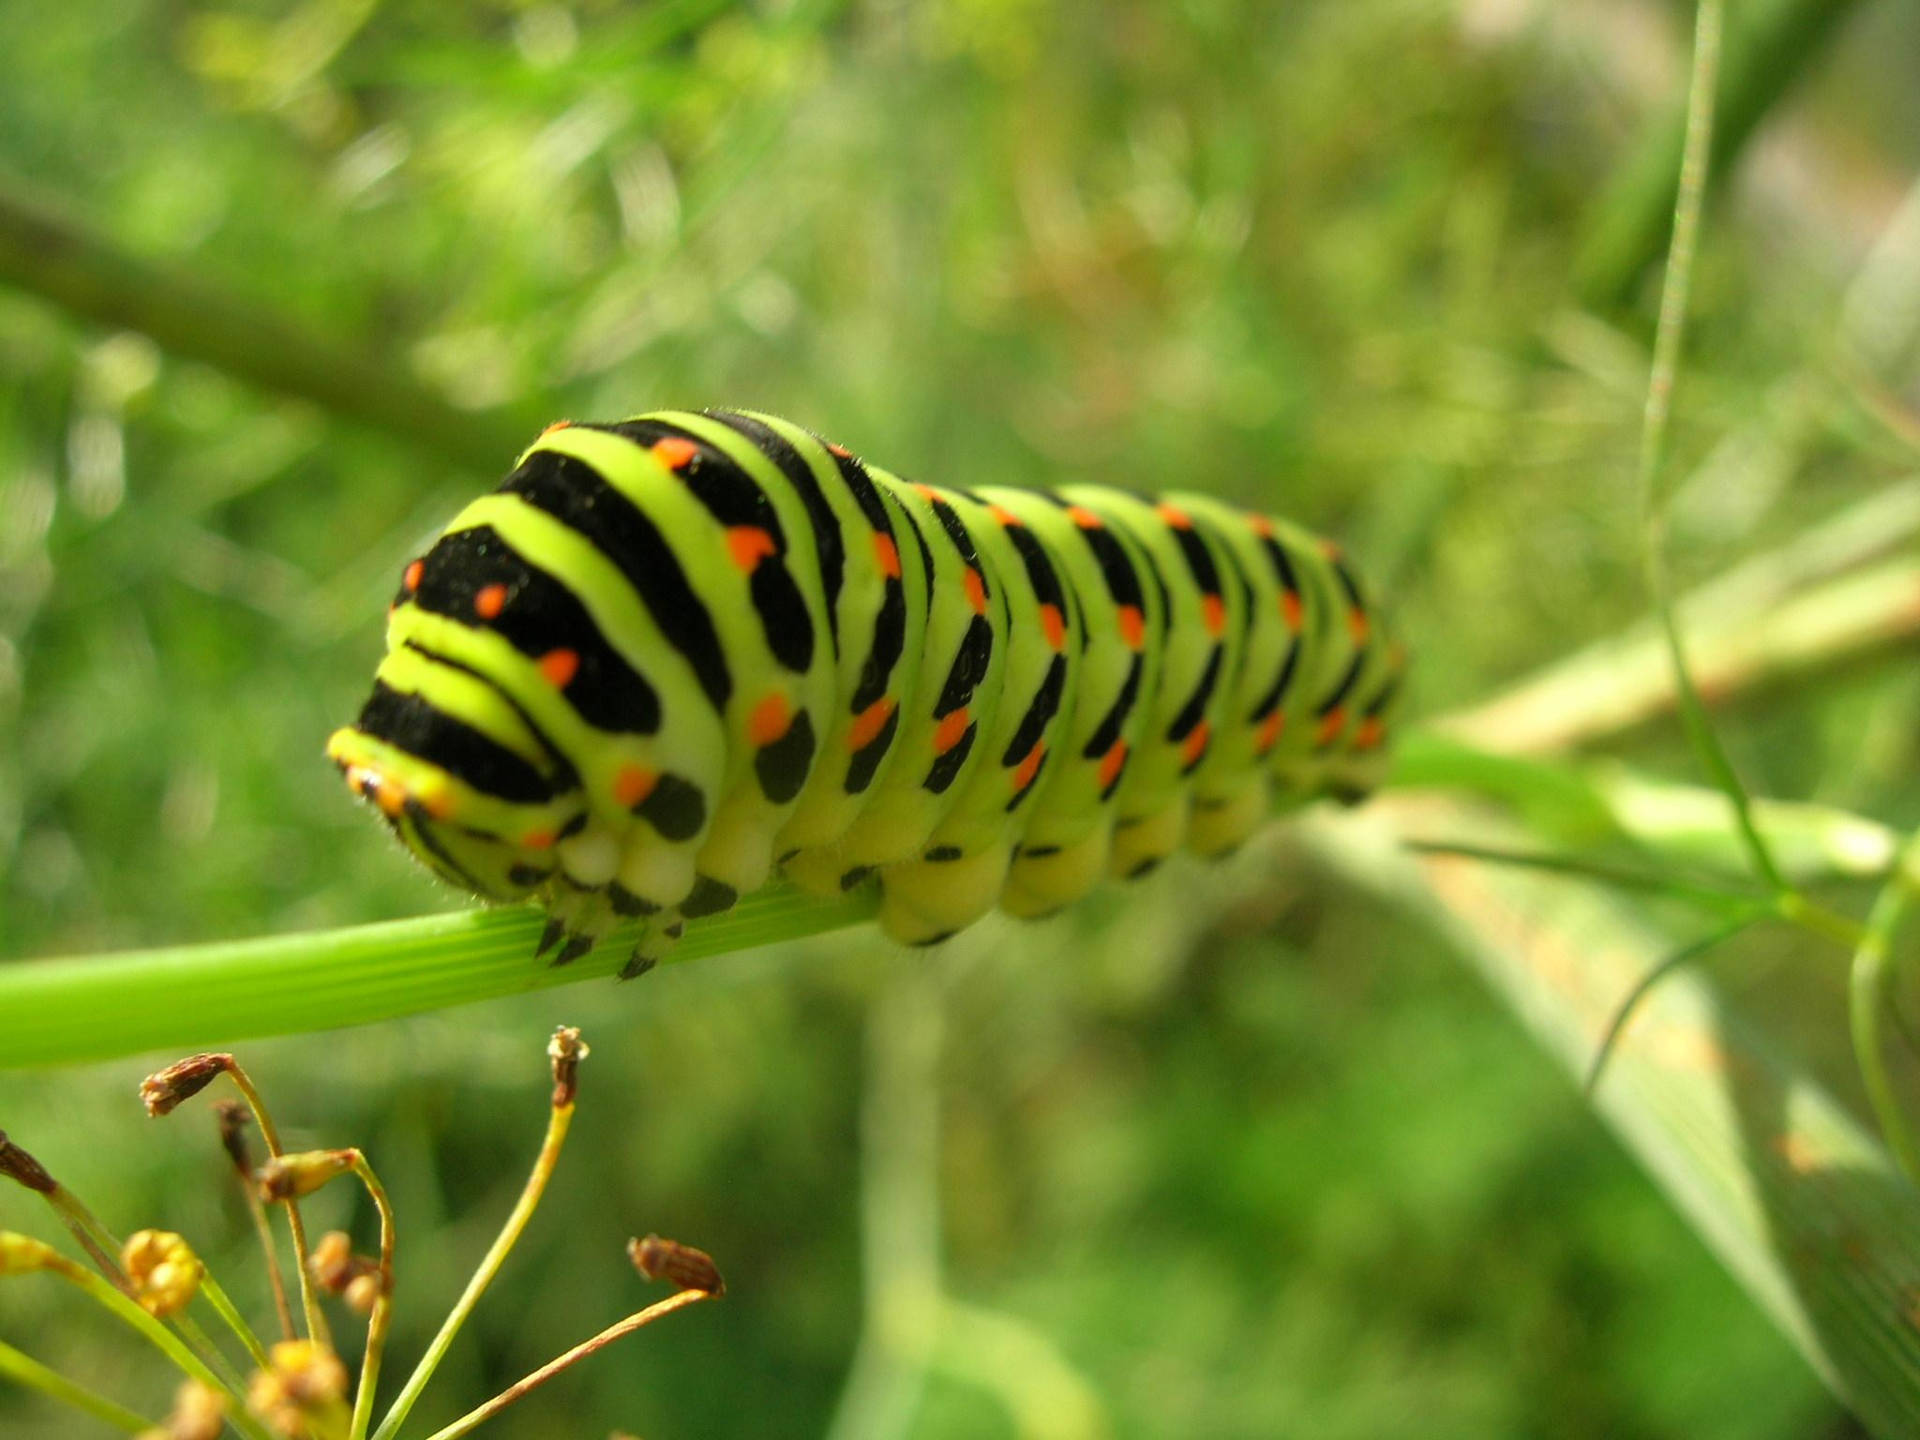 Green Caterpillar With Short Legs Wallpaper